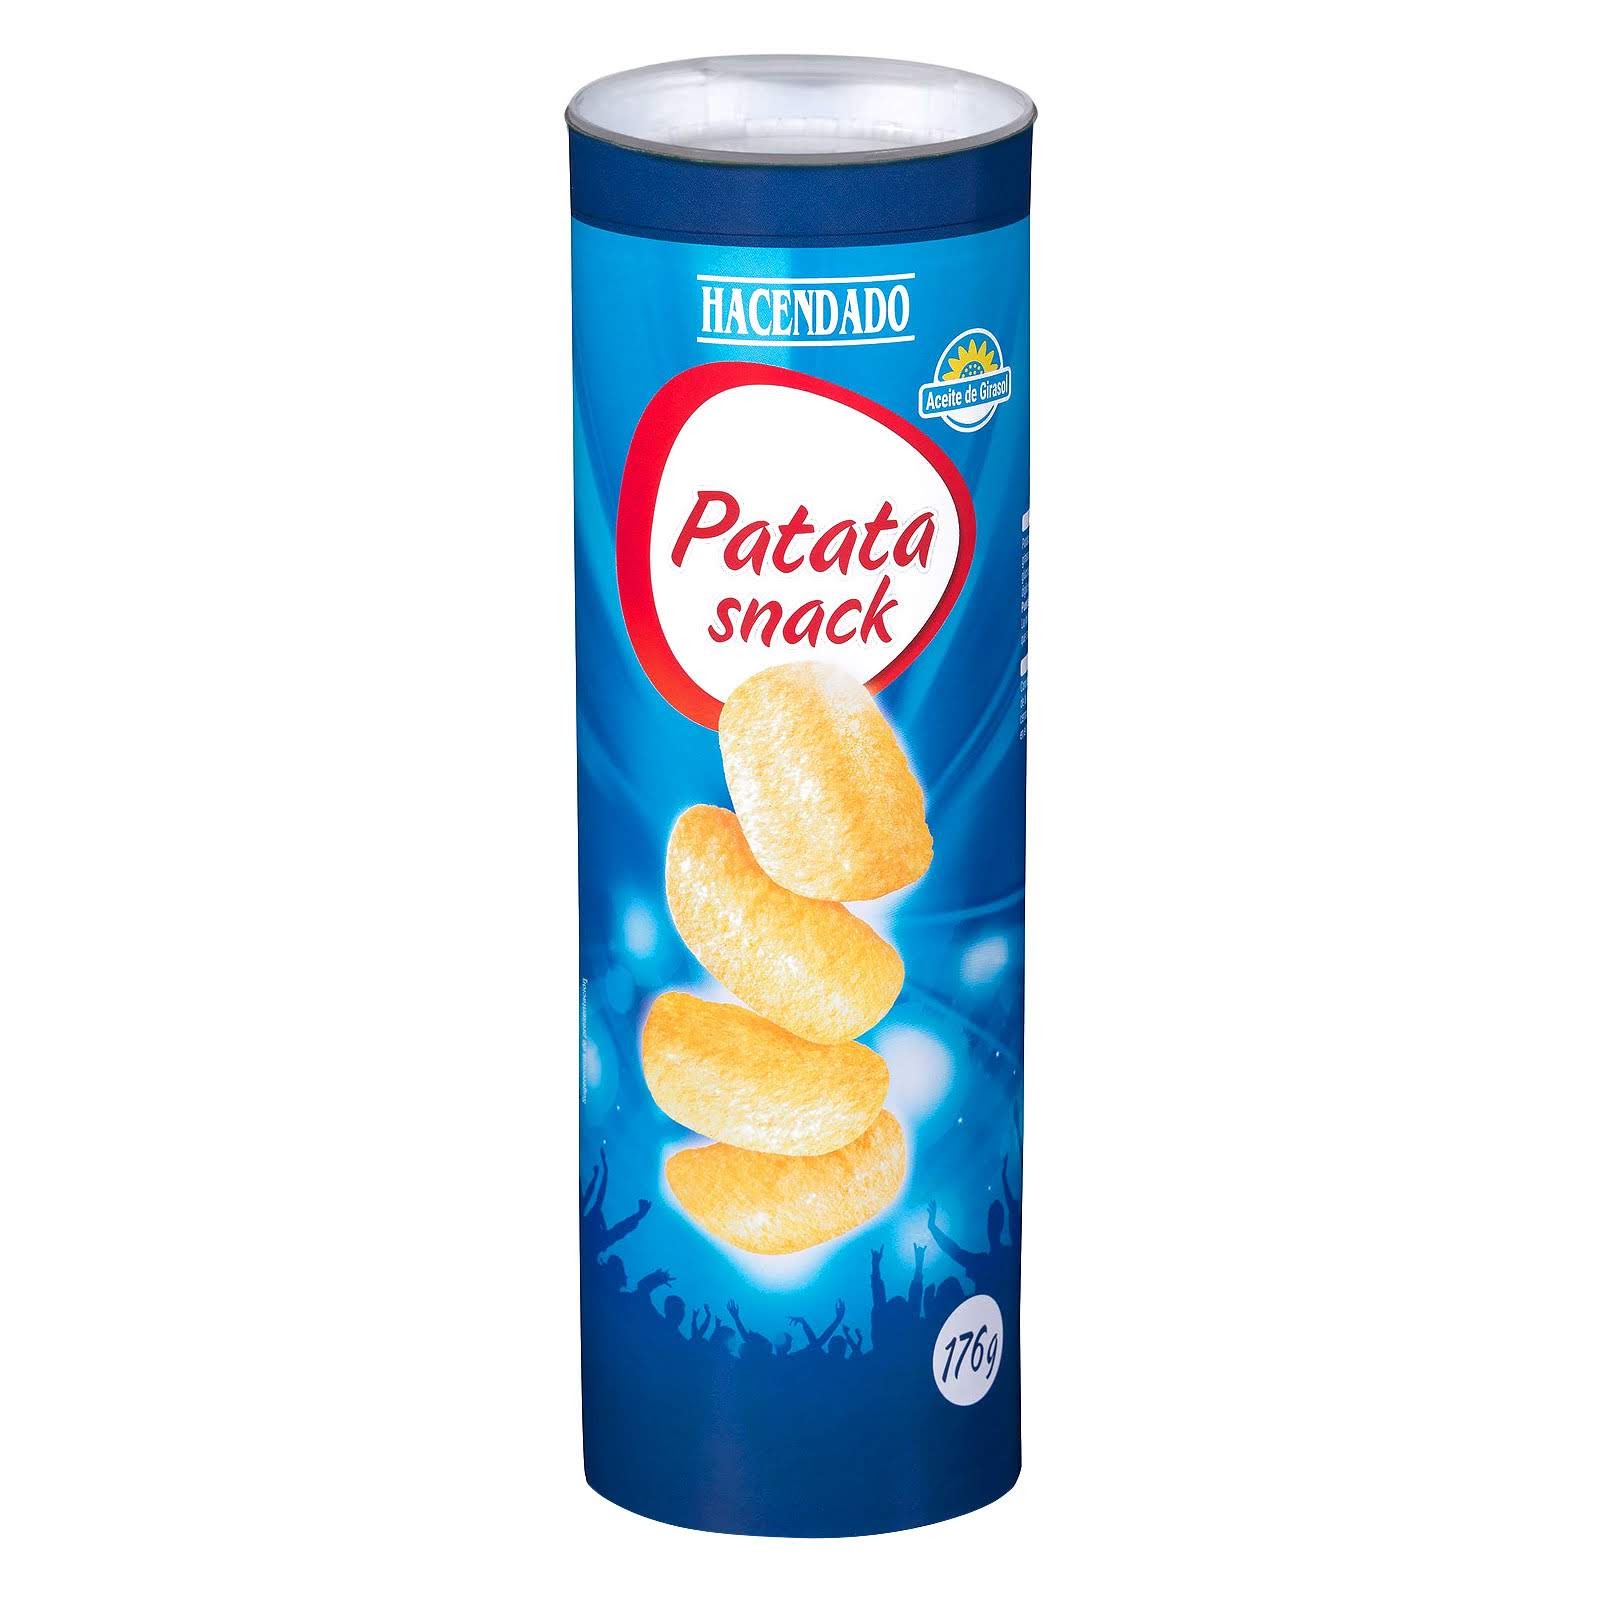 Pringles Mercadona